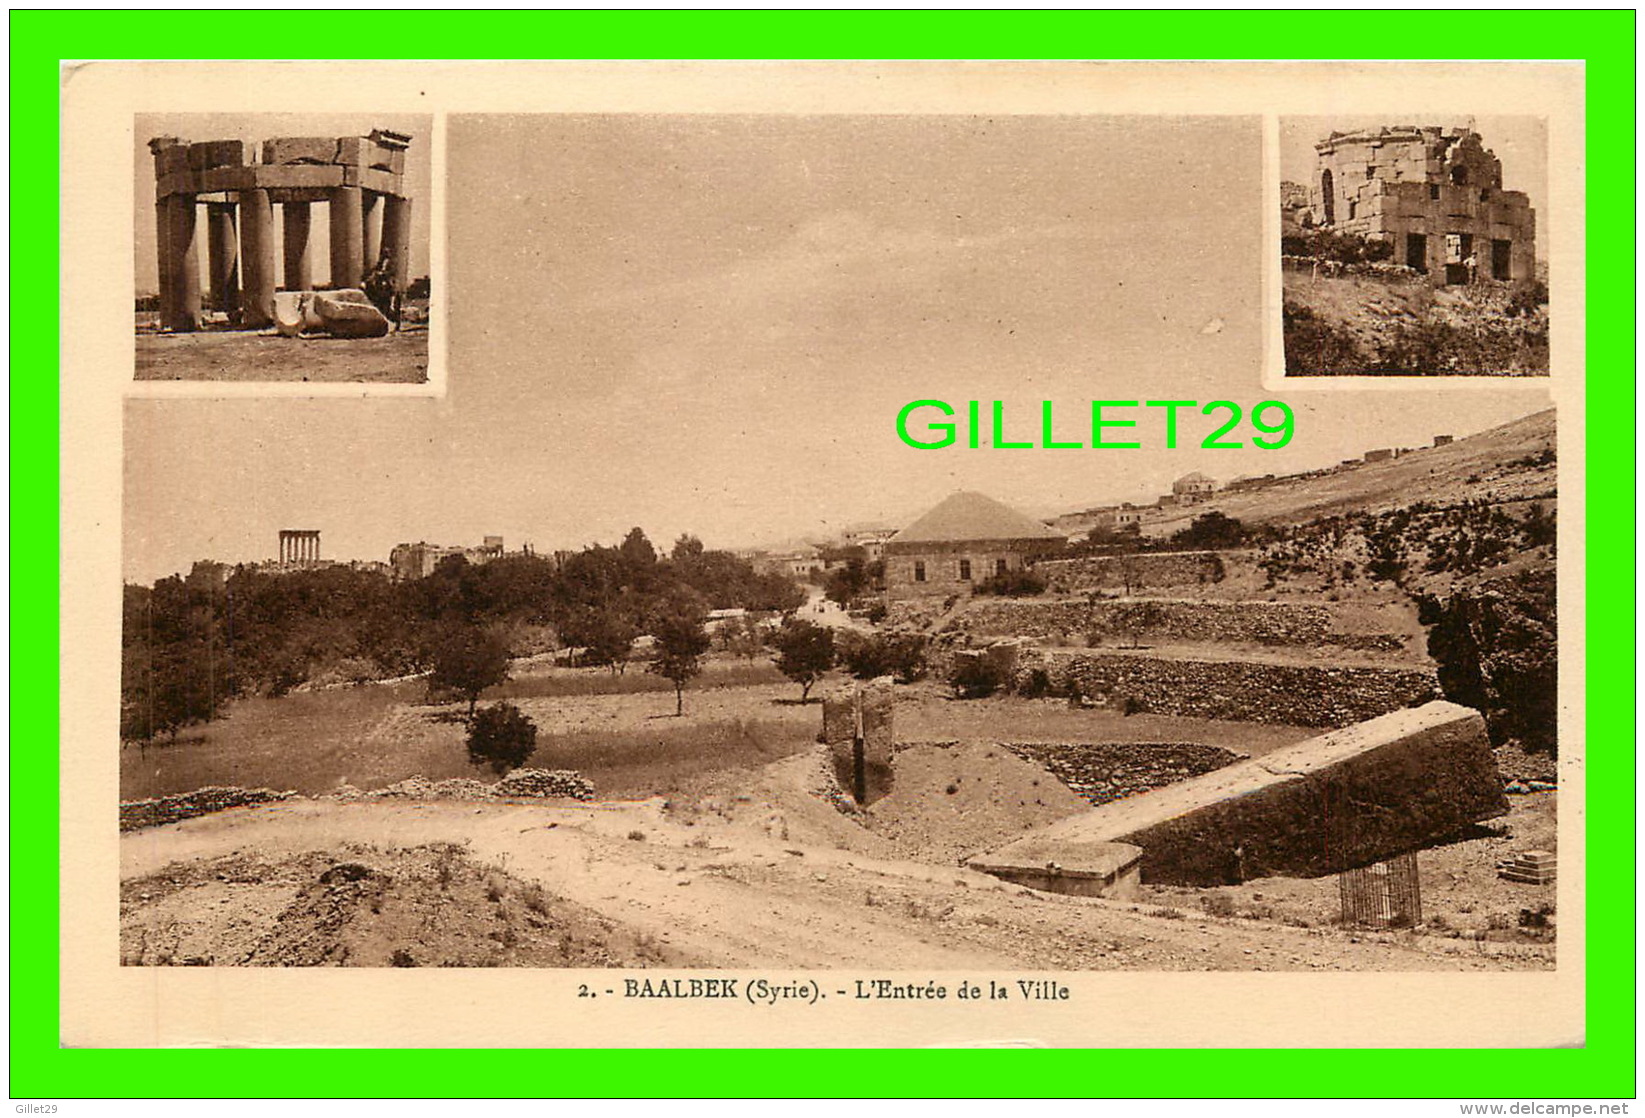 BAALBEK, SYRIE - L'ENTRÉE DE LA VILLE - 3 MULTIVUES - COLLECTION ORIENT-MONUMENTS - - Syrie